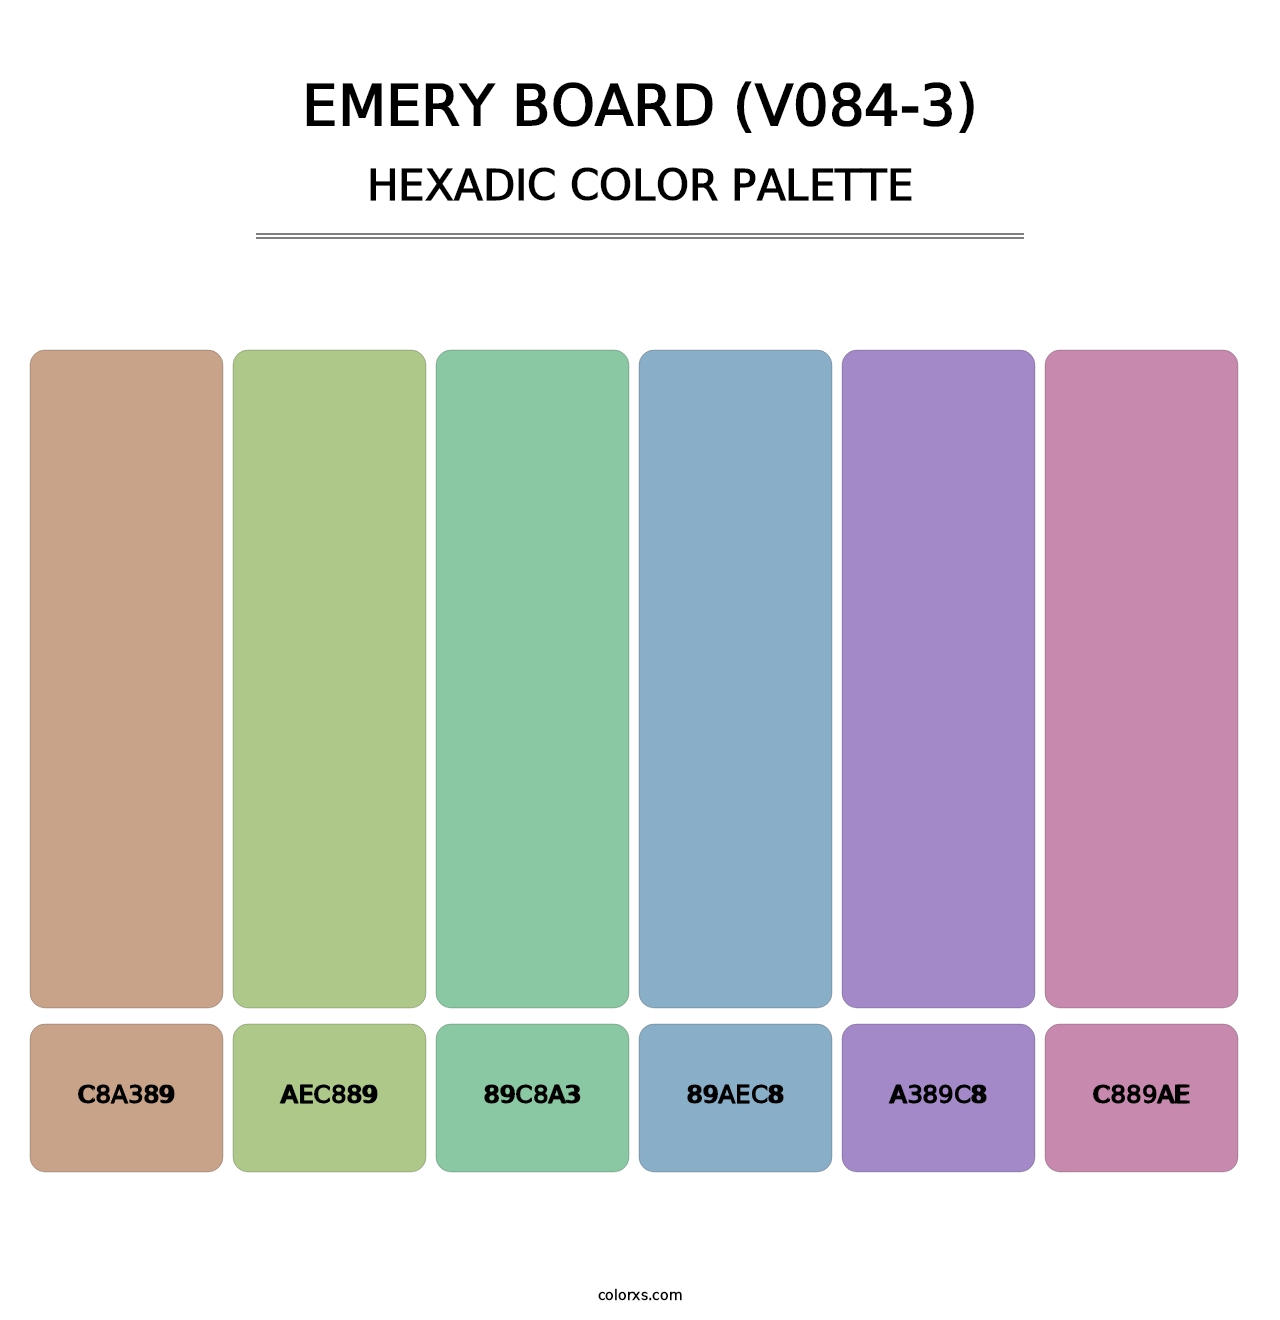 Emery Board (V084-3) - Hexadic Color Palette